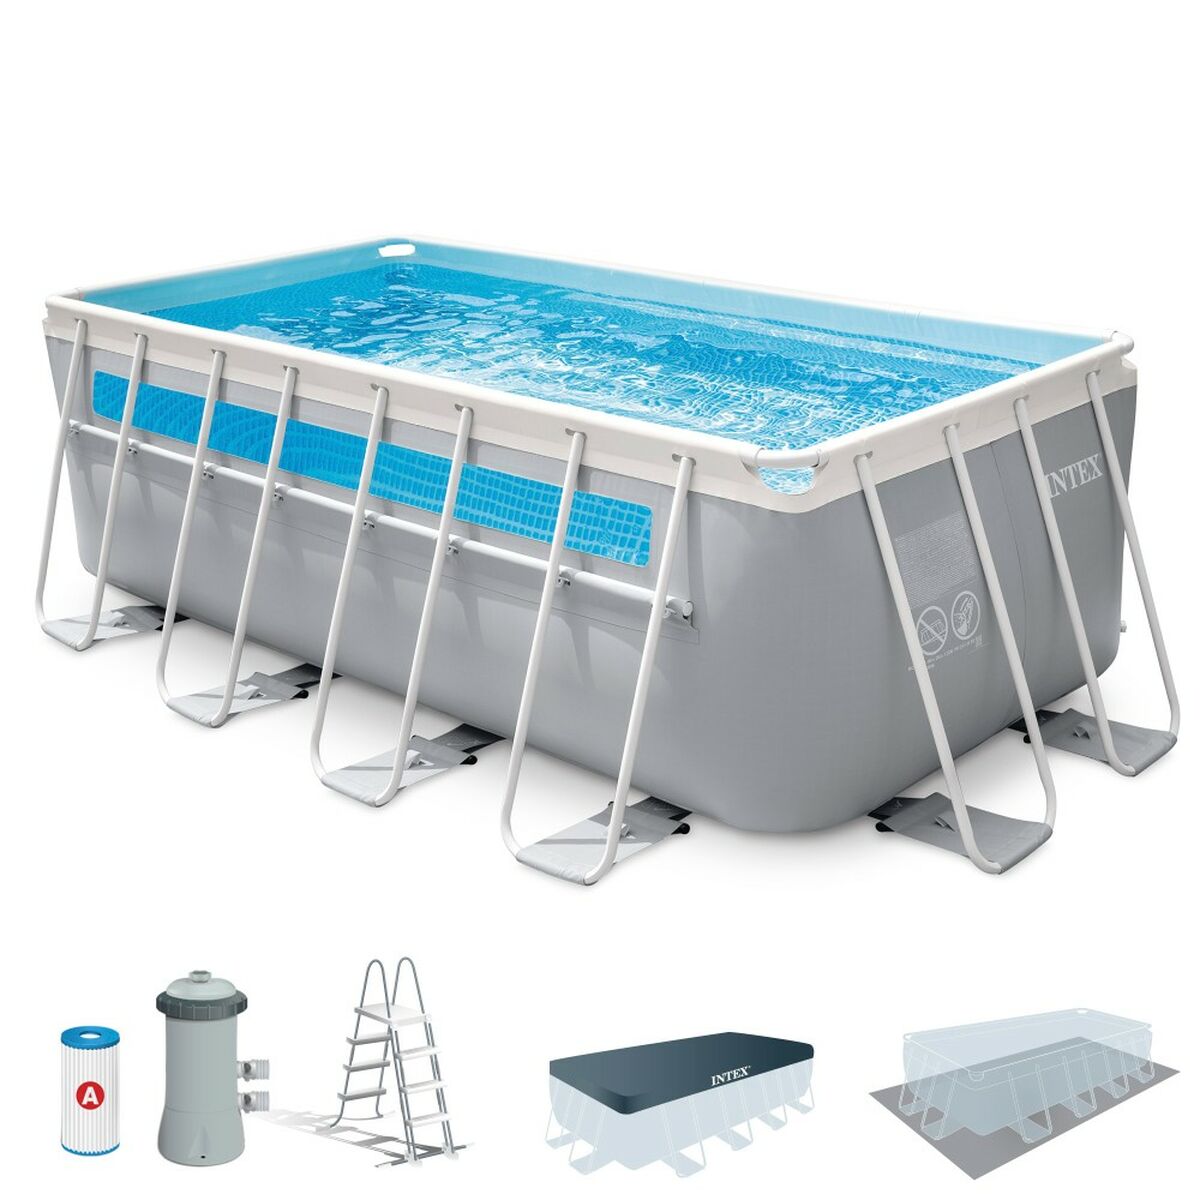 Detachable Pool Intex 400 x 122 x 200 cm